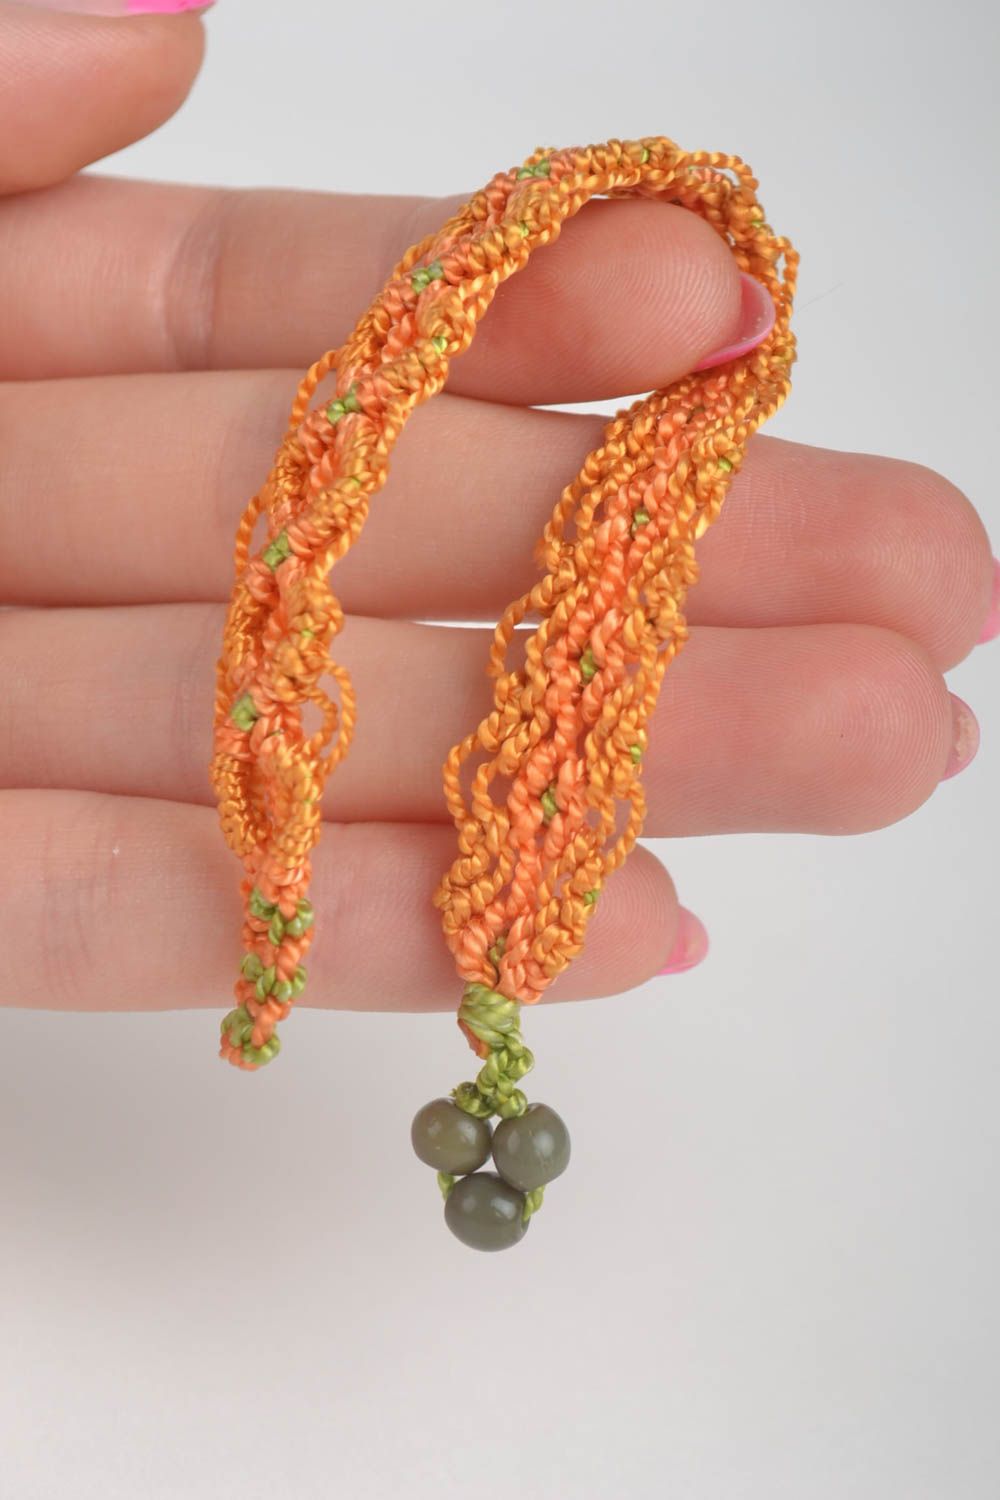 Handmade female wrist bracelet stylish woven accessory orange stylish bracelet photo 5